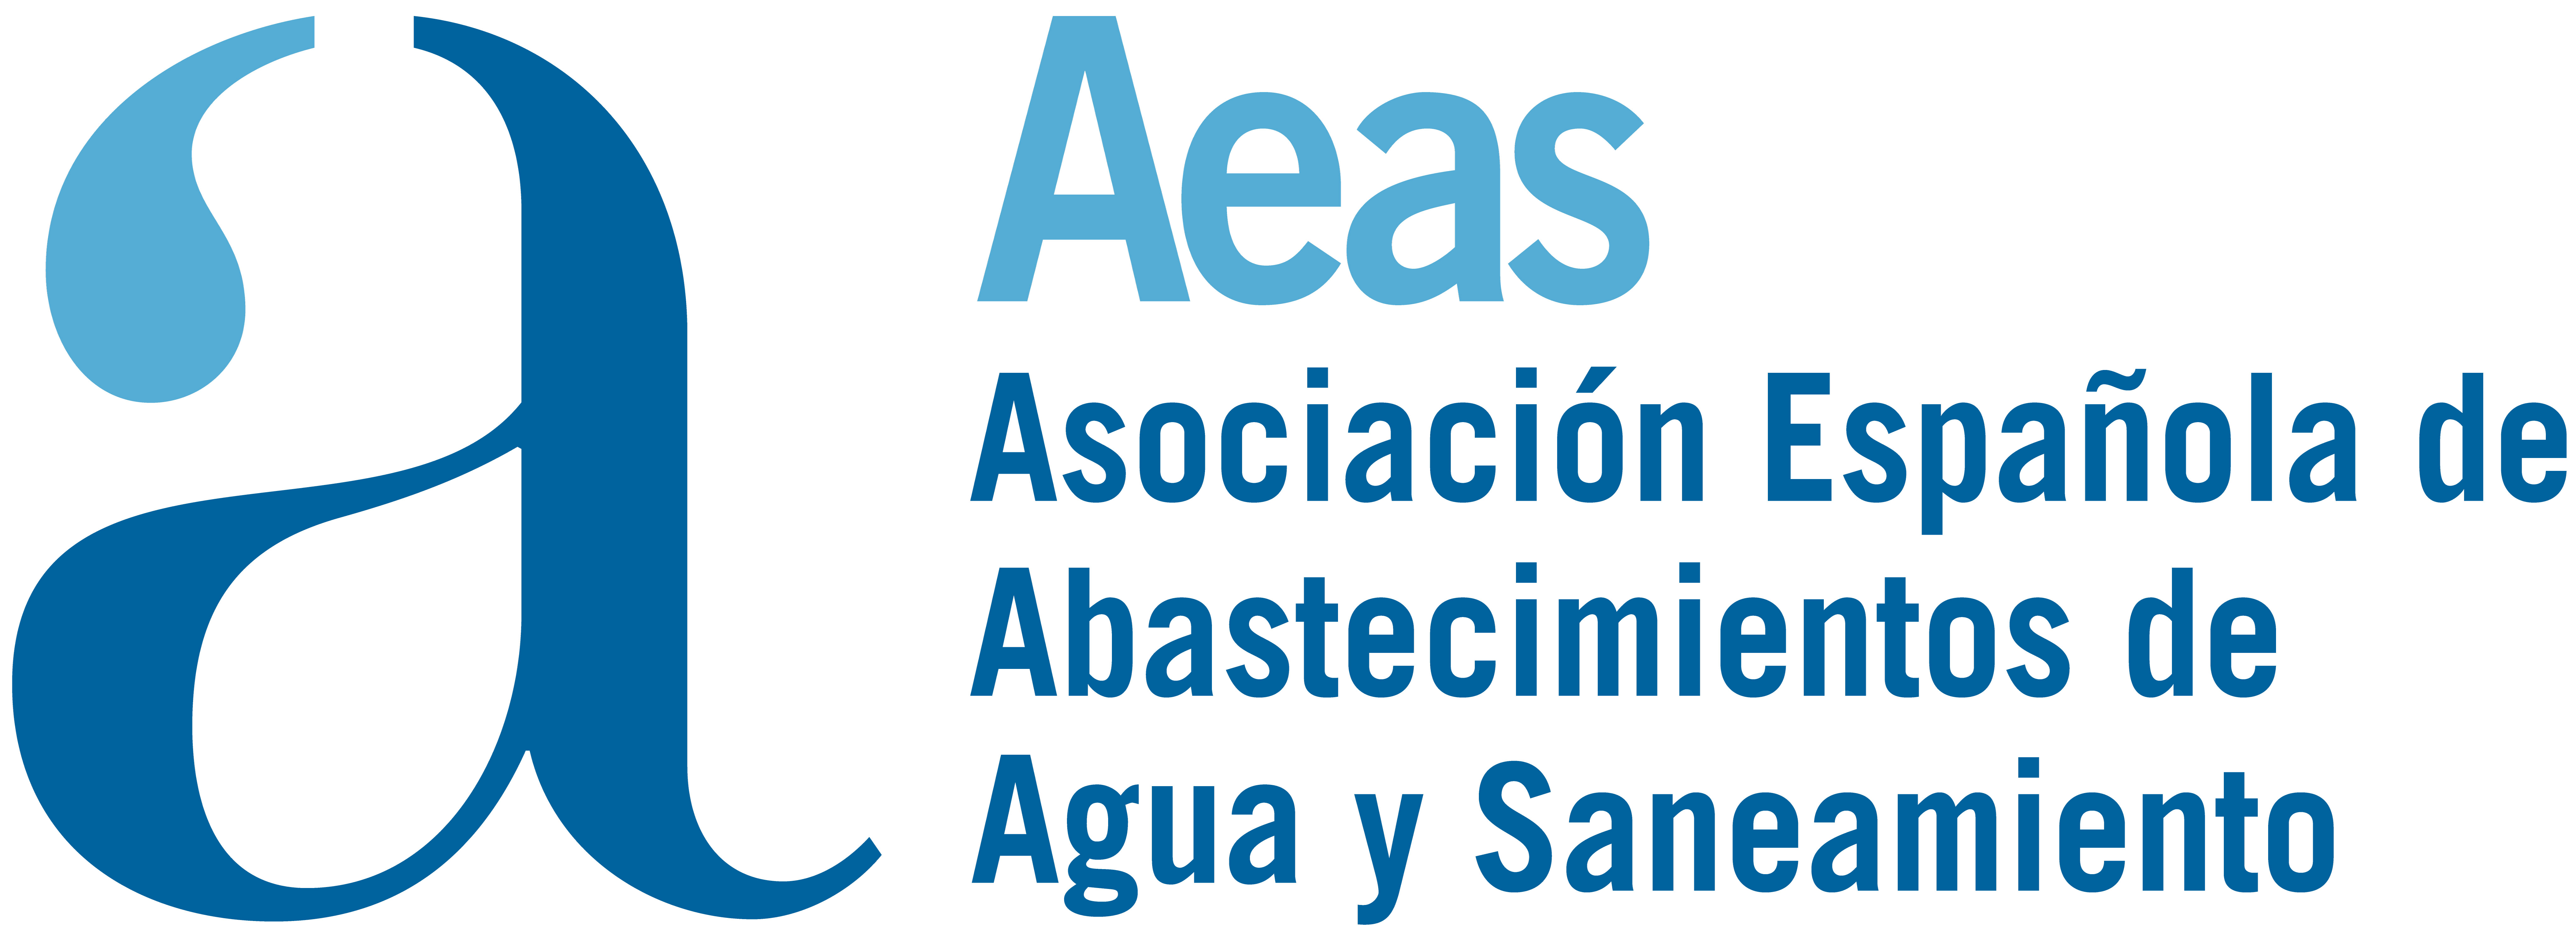 AEAS celebrará el webinar &quot;AeasBIMClass. El sistema de clasificación BIM para el sector del agua” el 12 de diciembre